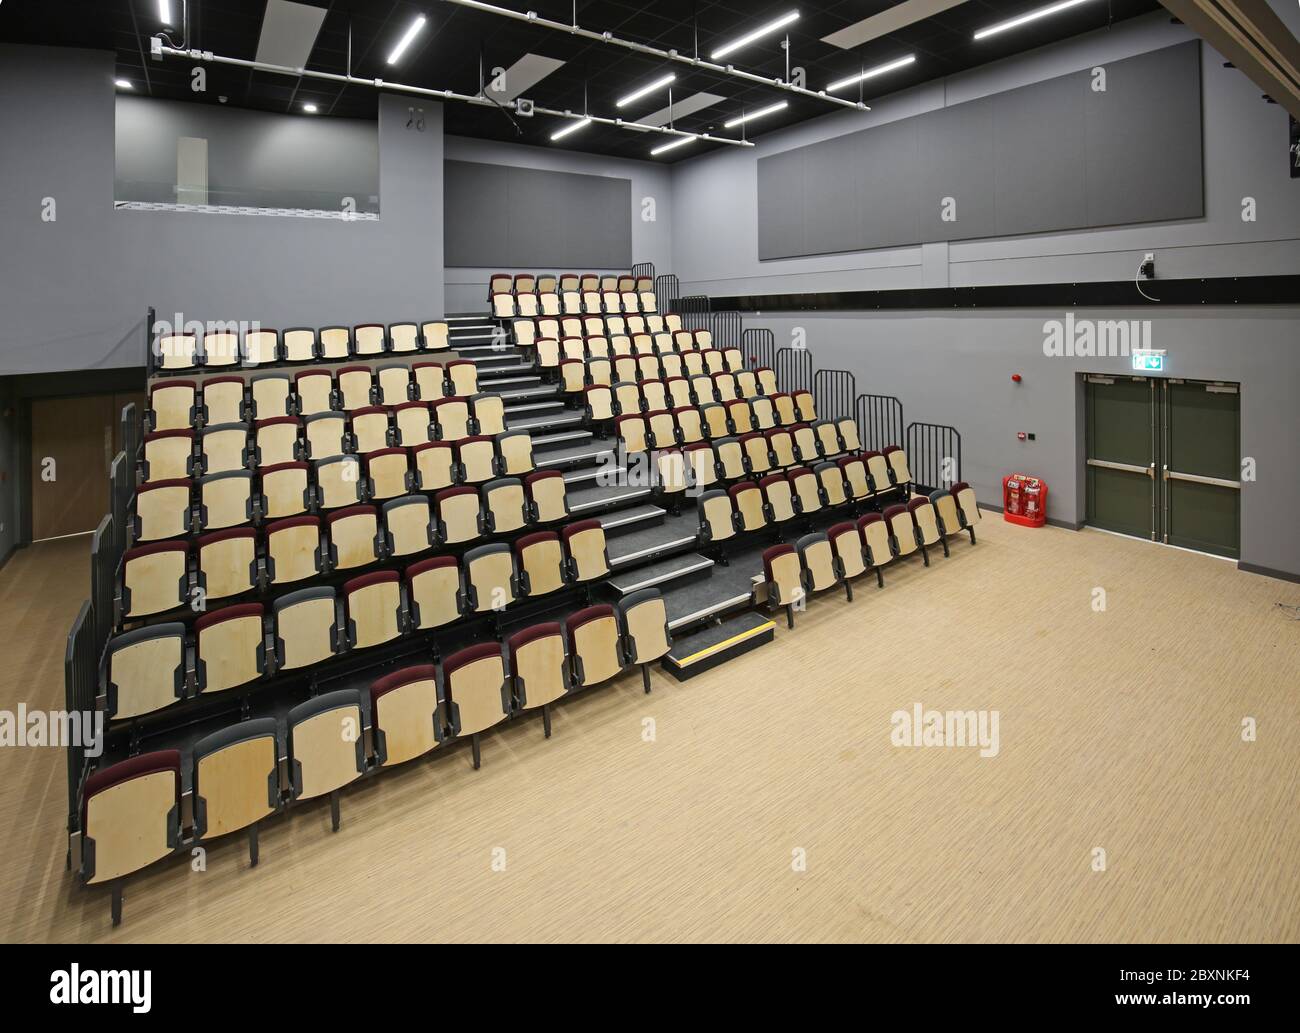 Ausziehbare Bleacher-Sitzmöbel in einer neu erbauten Schulhalle im Süden Londons, Großbritannien. Zeigt das System vollständig ausgefahren und bietet 9 Reihen gestufter Sitzplätze. Stockfoto